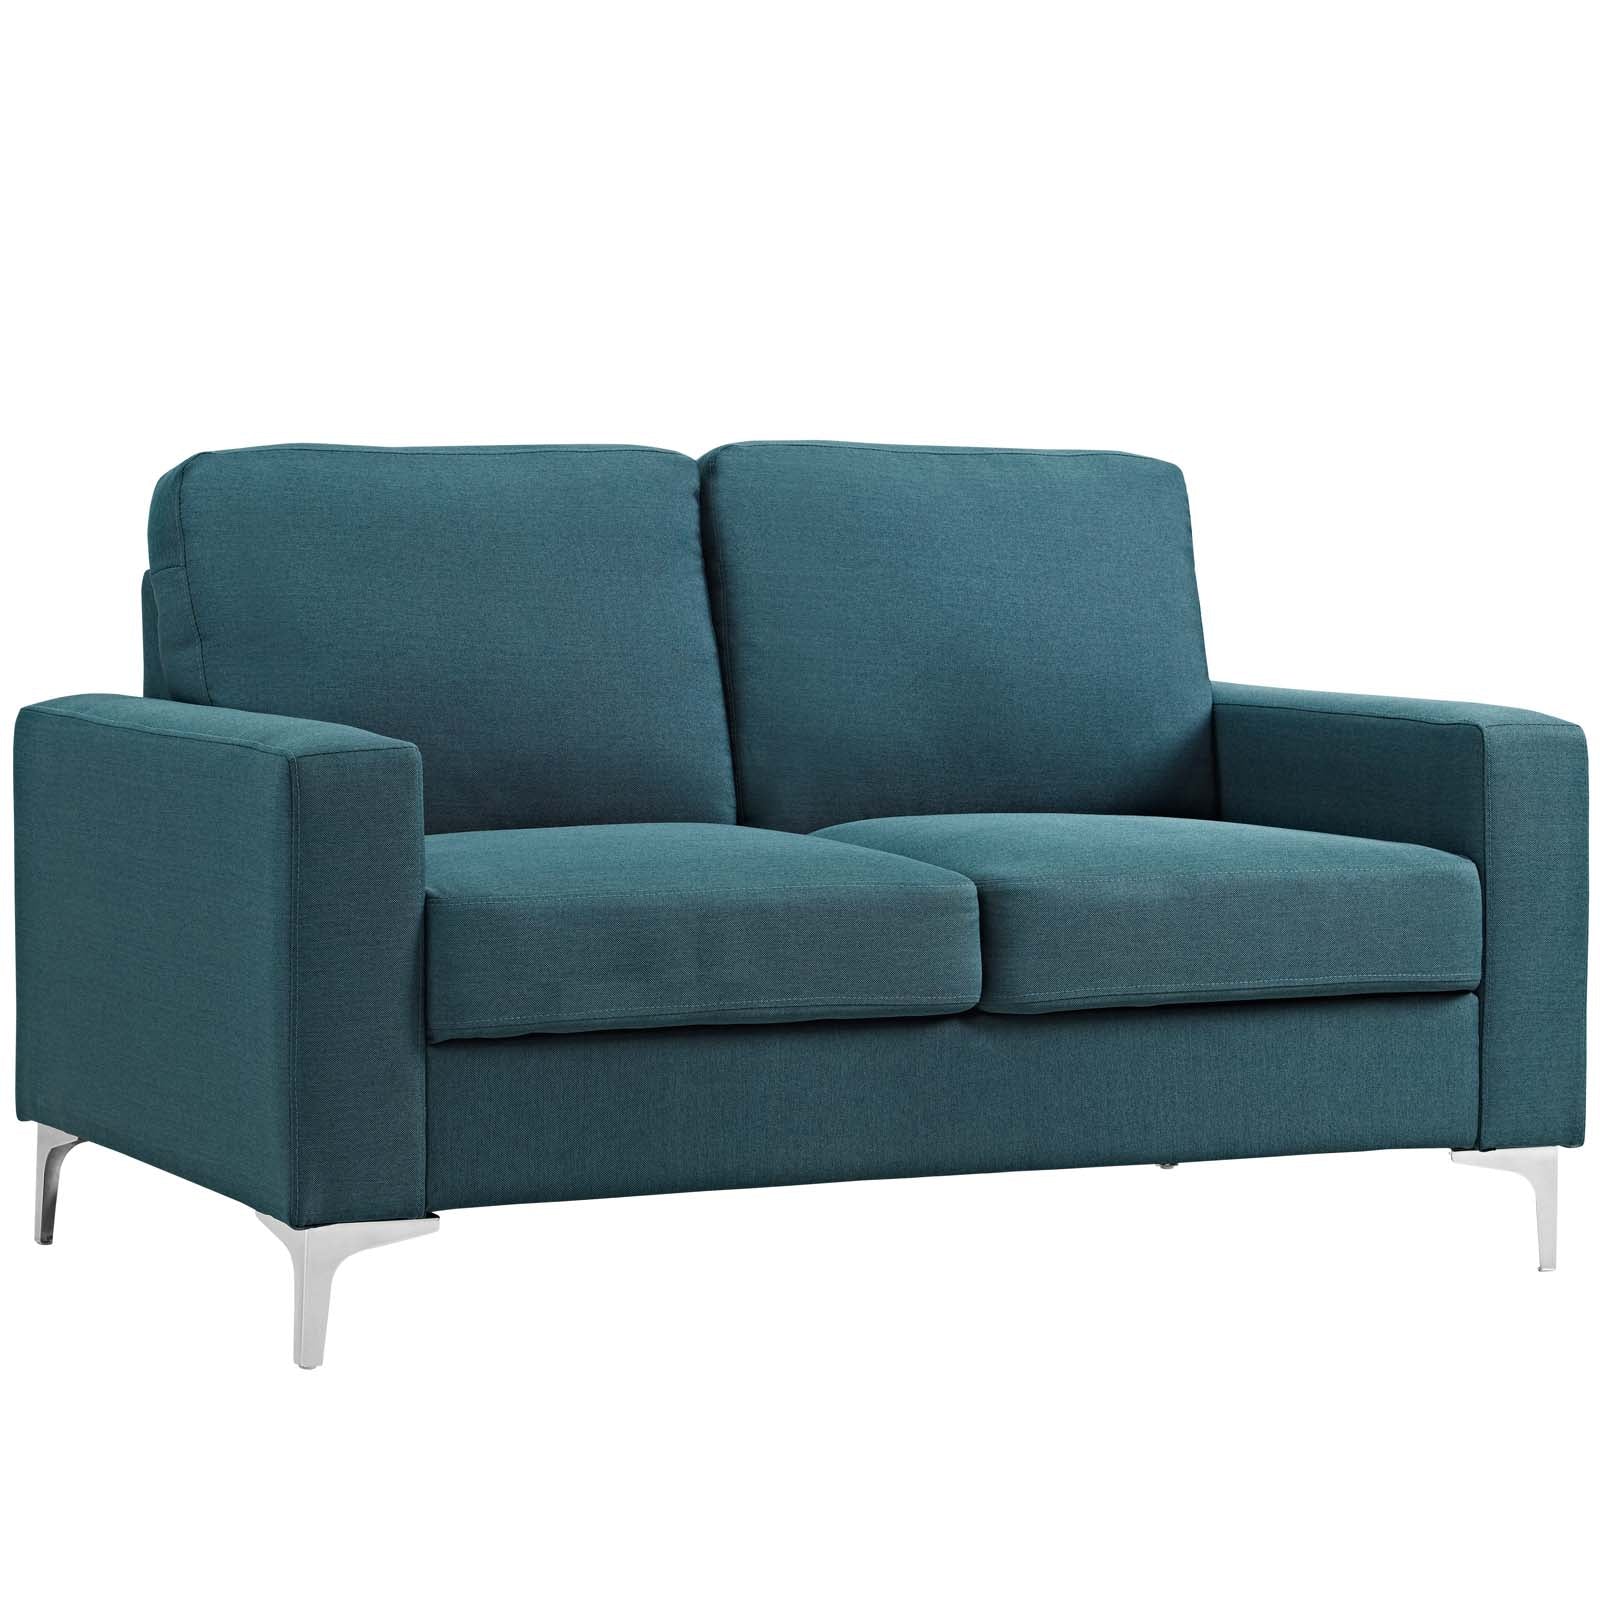 Allure Upholstered Sofa